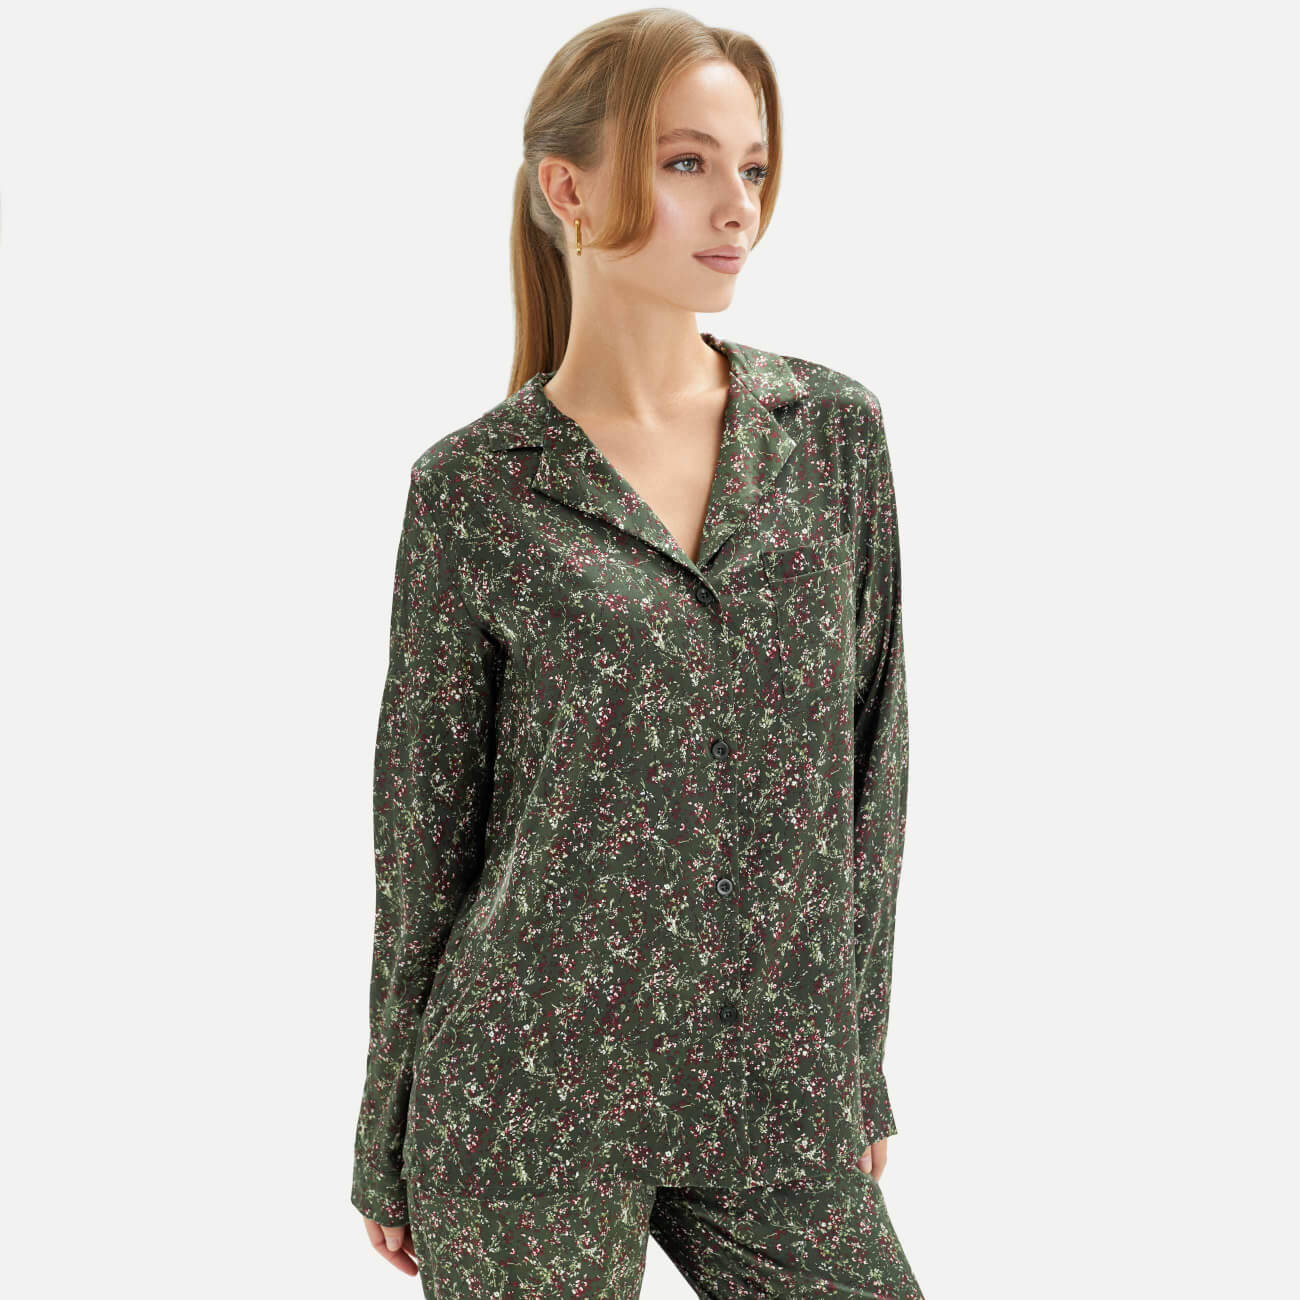 Рубашка женская, с длинным рукавом, р. S, полиэстер, зеленая, Малиновые цветы, Amy рубашка в широкую клетку uniqlo из сверхтонкого хлопка с длинным рукавом a